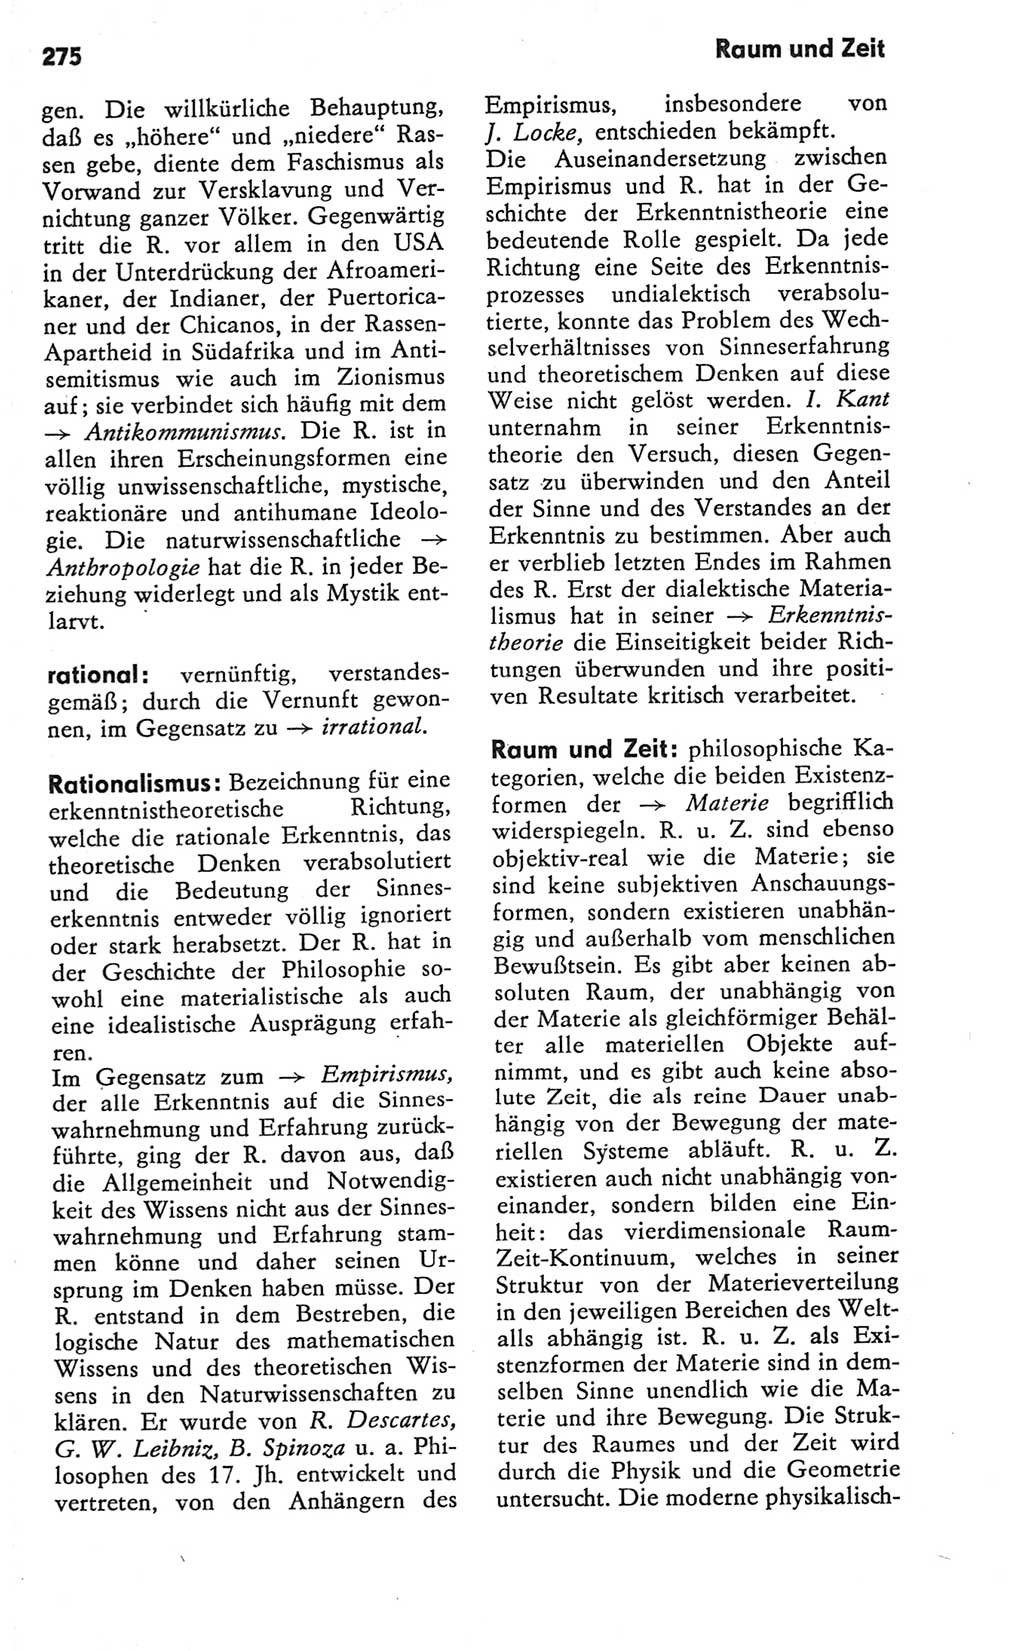 Kleines Wörterbuch der marxistisch-leninistischen Philosophie [Deutsche Demokratische Republik (DDR)] 1981, Seite 275 (Kl. Wb. ML Phil. DDR 1981, S. 275)